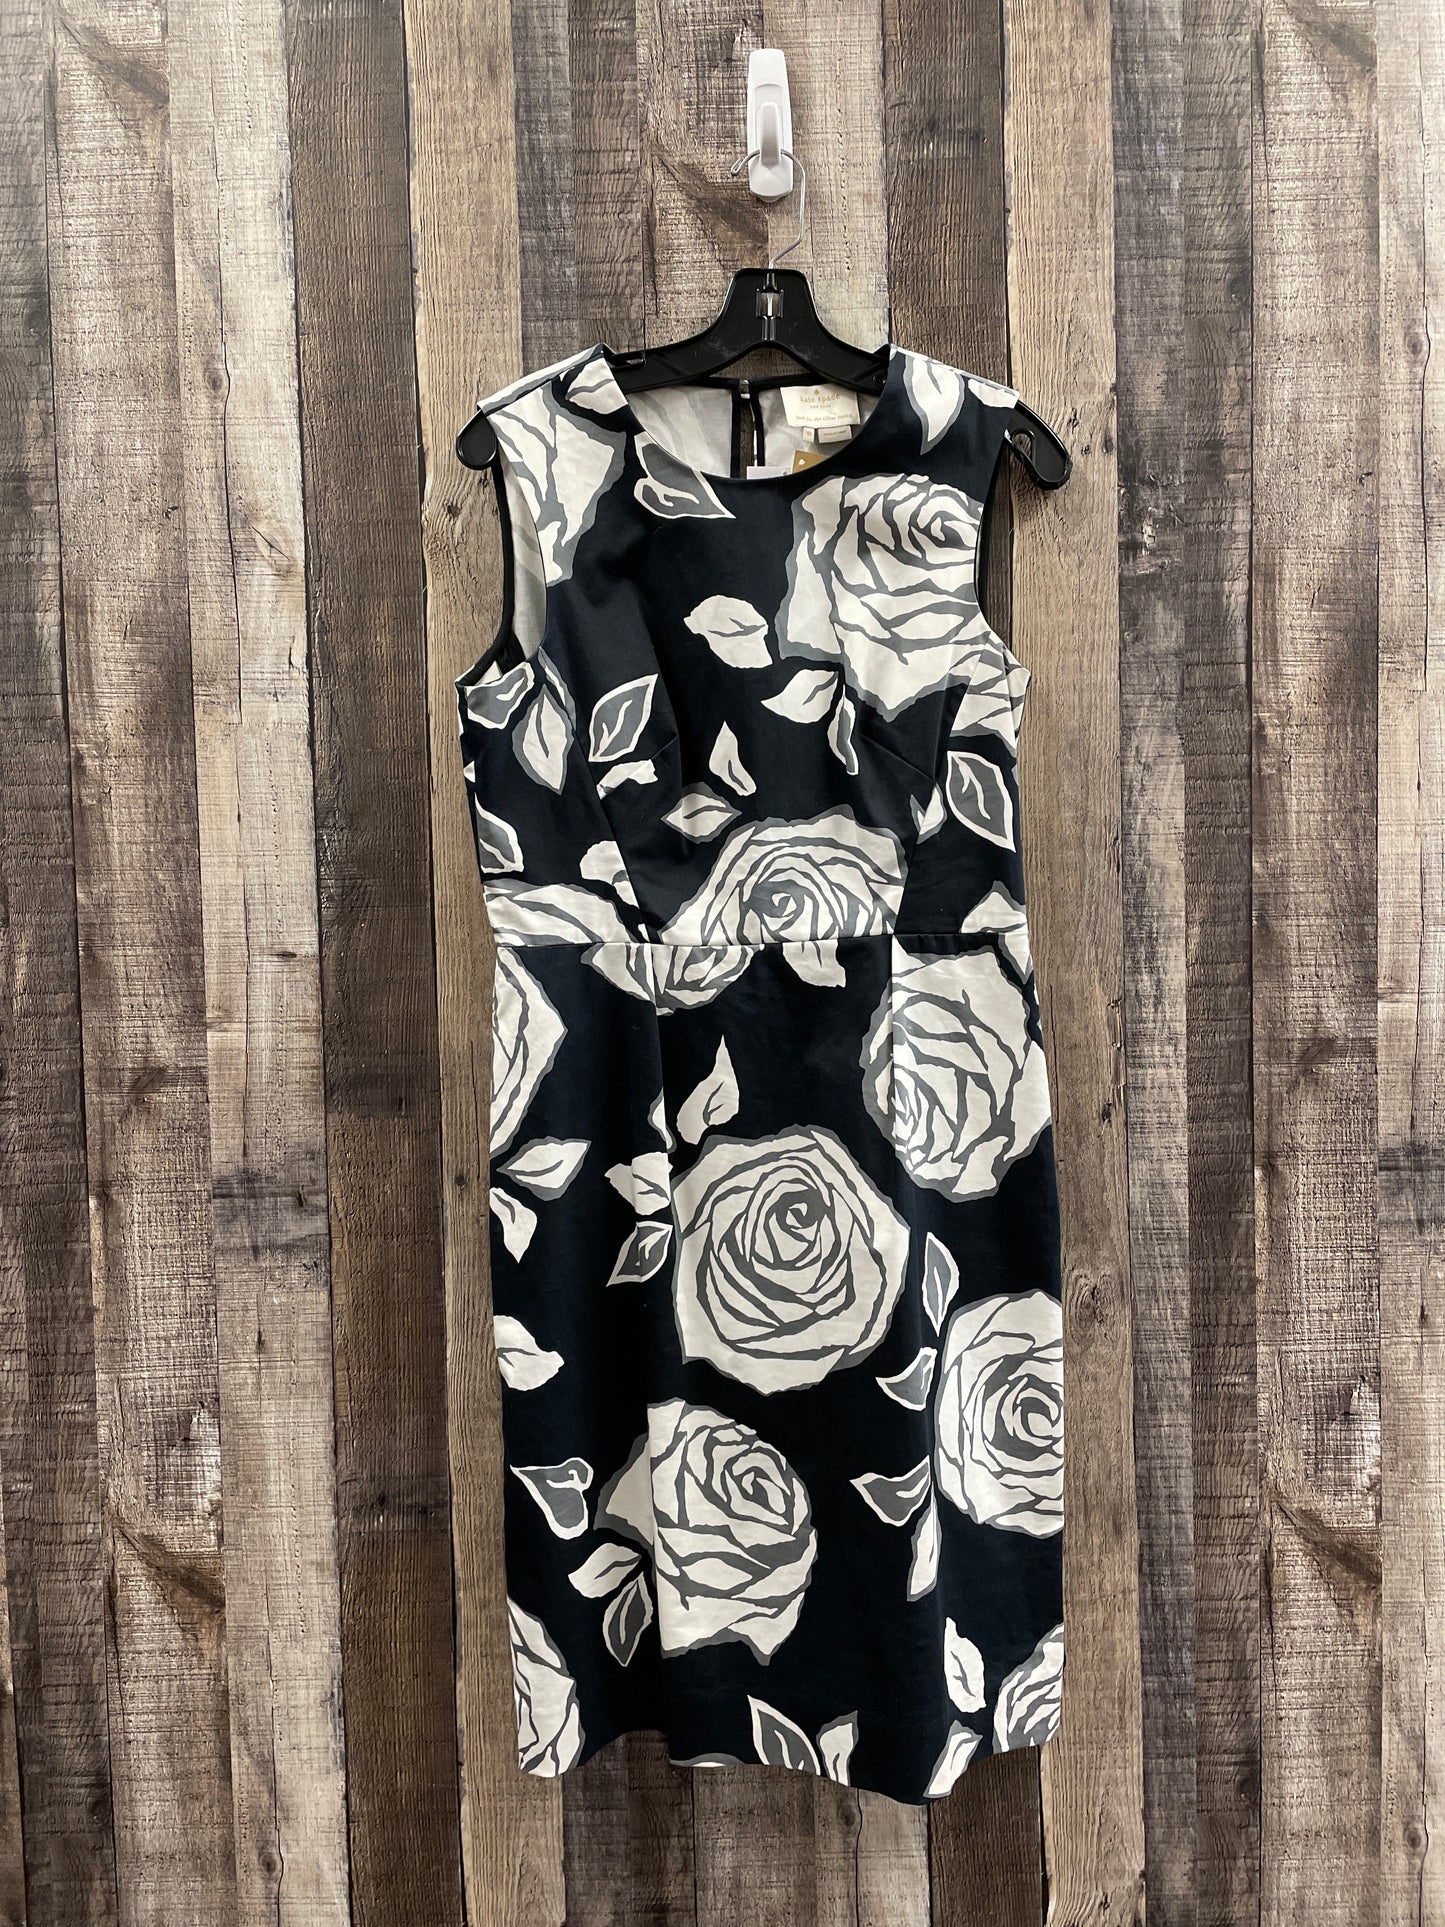 Floral Print Dress Designer Kate Spade, Size M(10)